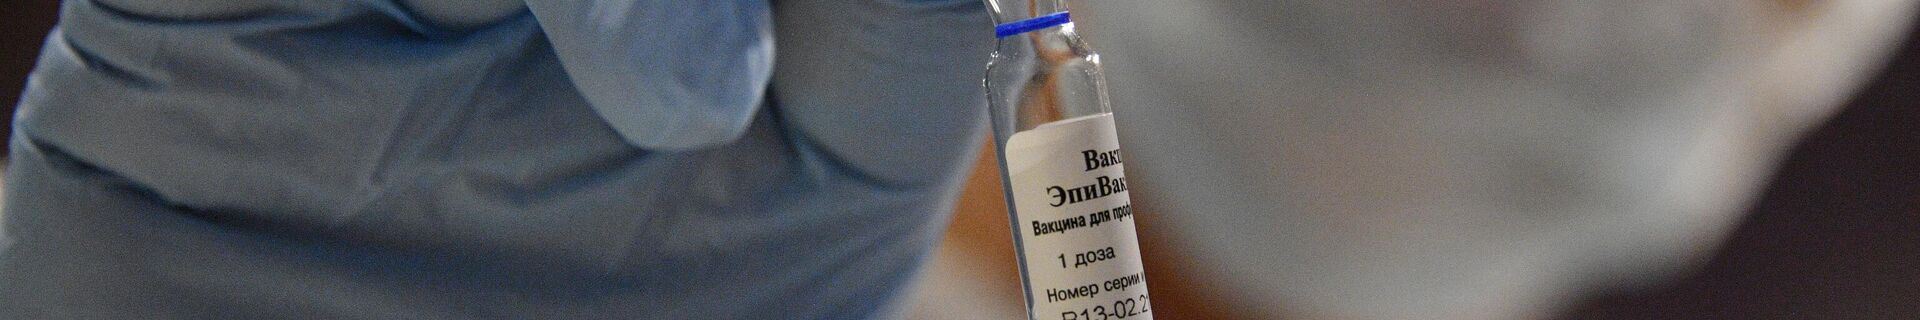 Вакцинация от COVID-19 - Sputnik Беларусь, 1920, 30.06.2021